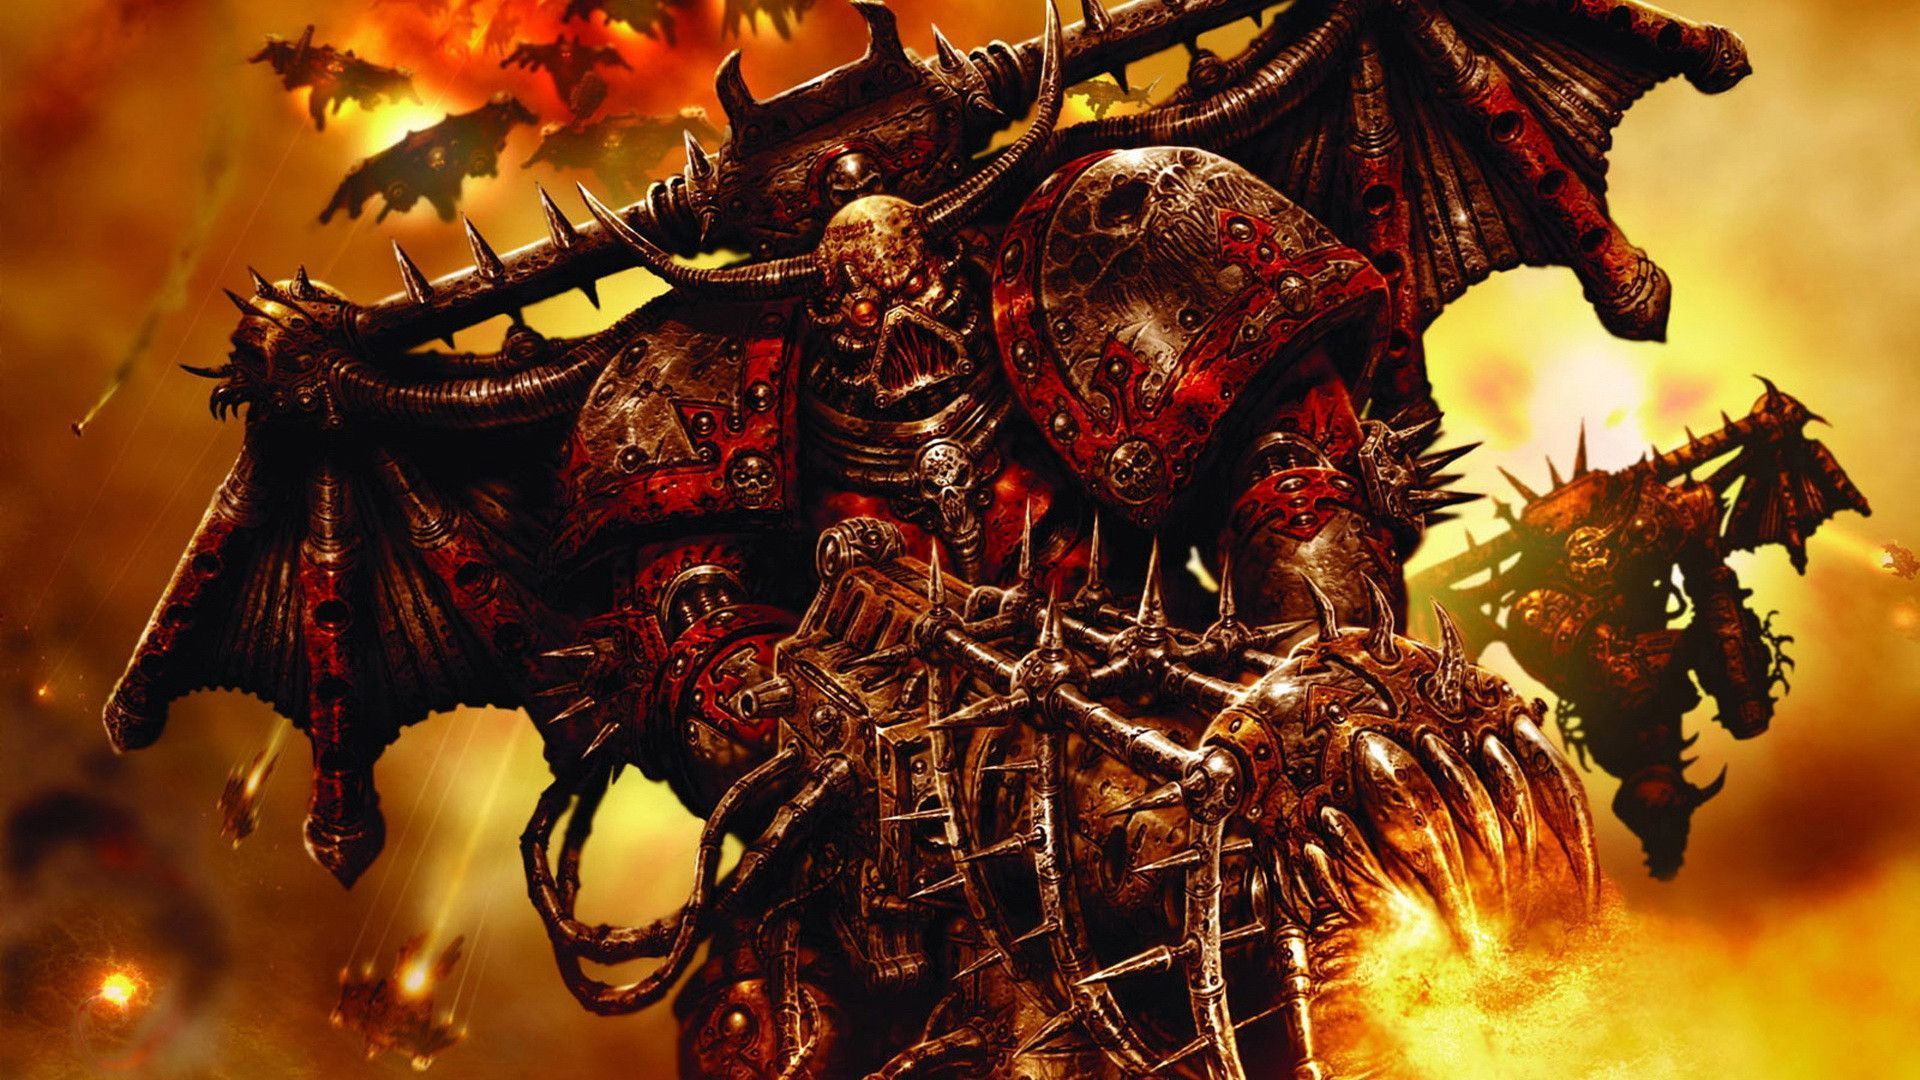 warhammer 40k fondo de pantalla hd,juego de acción y aventura,cg artwork,demonio,personaje de ficción,juegos